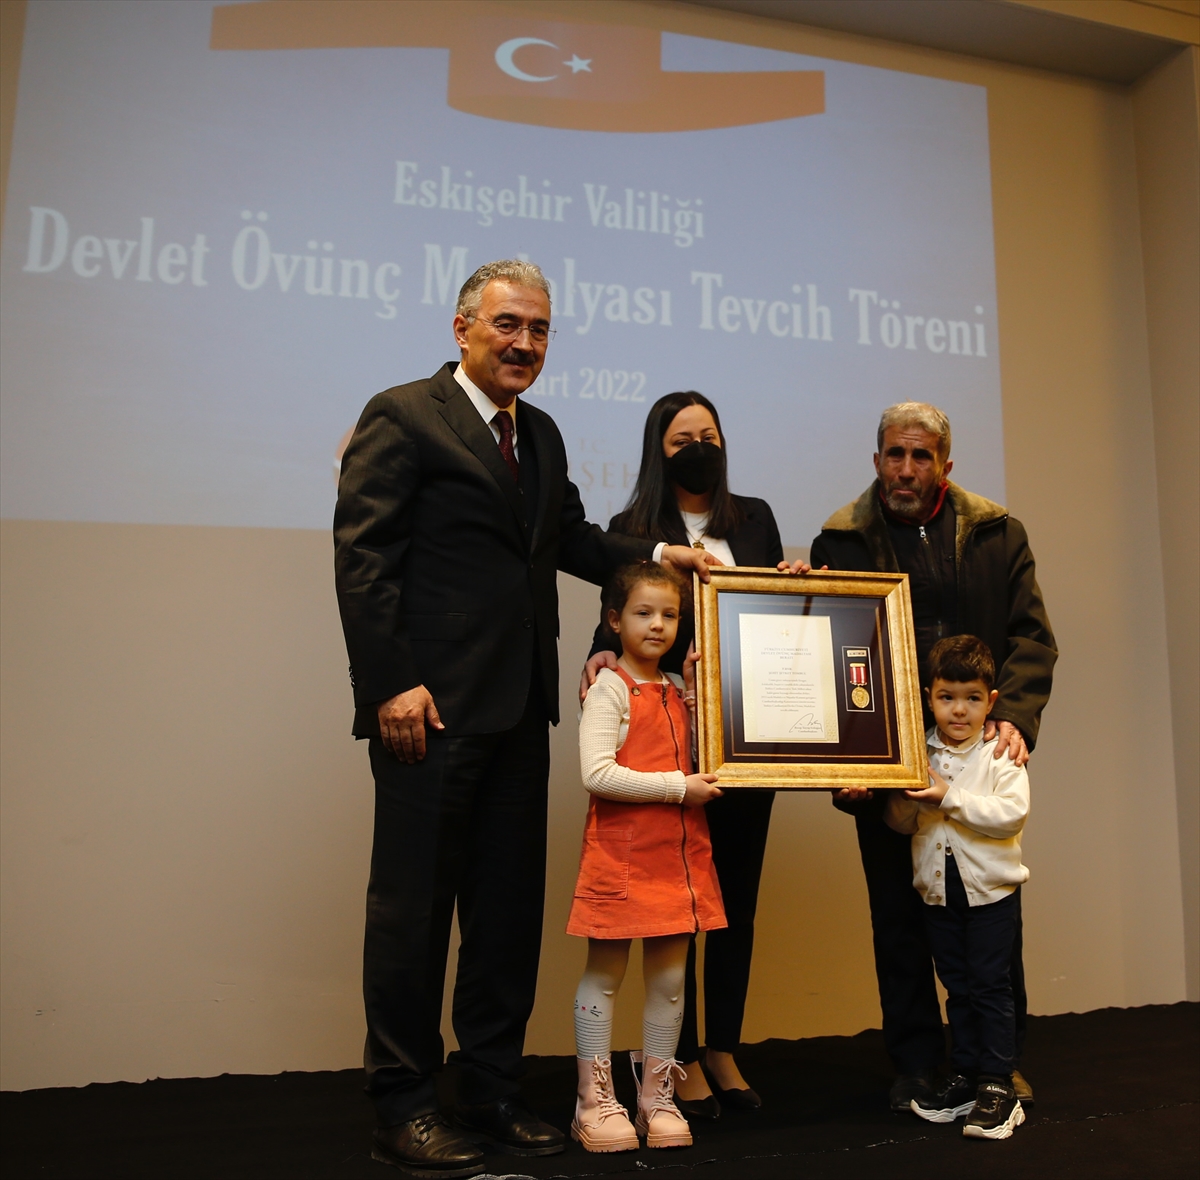 Eskişehir'de şehit aileleri ile gazilere devlet övünç madalyası ve beratı verildi